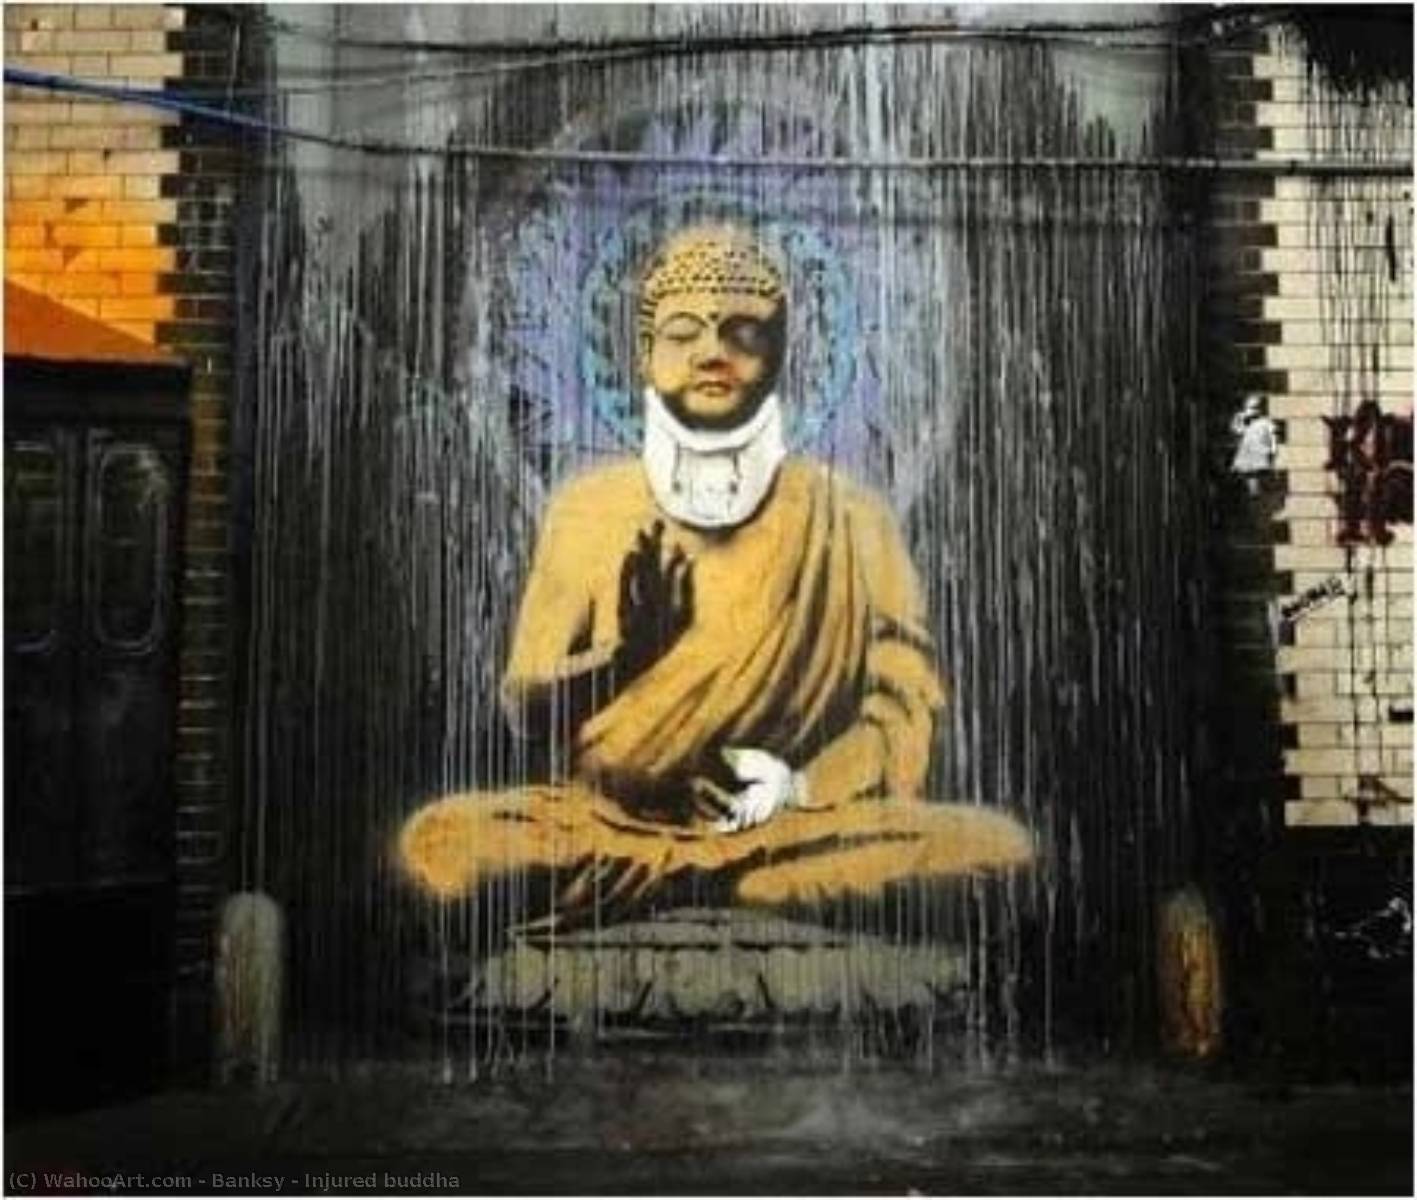 WikiOO.org - Encyclopedia of Fine Arts - Målning, konstverk Banksy - Injured buddha